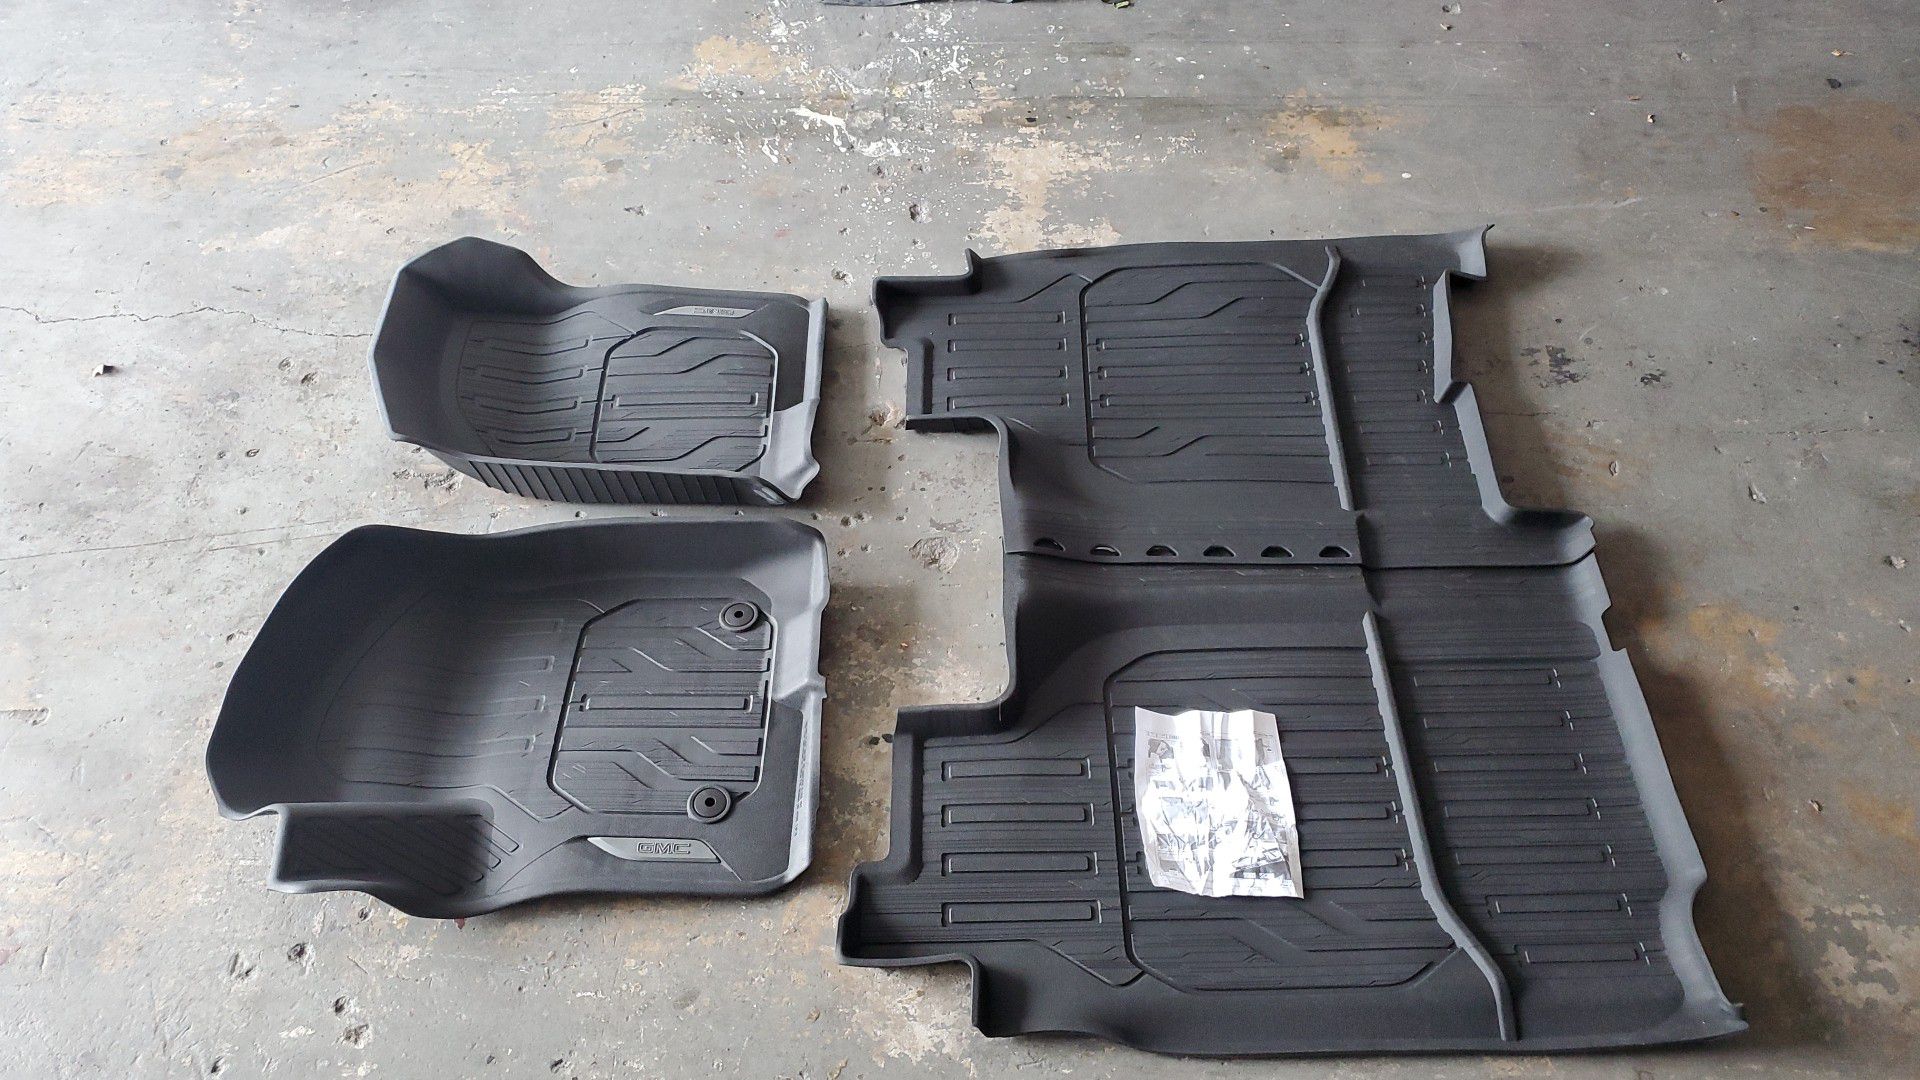 2019 / 20 GMC Sierra 1500 rubber mats set